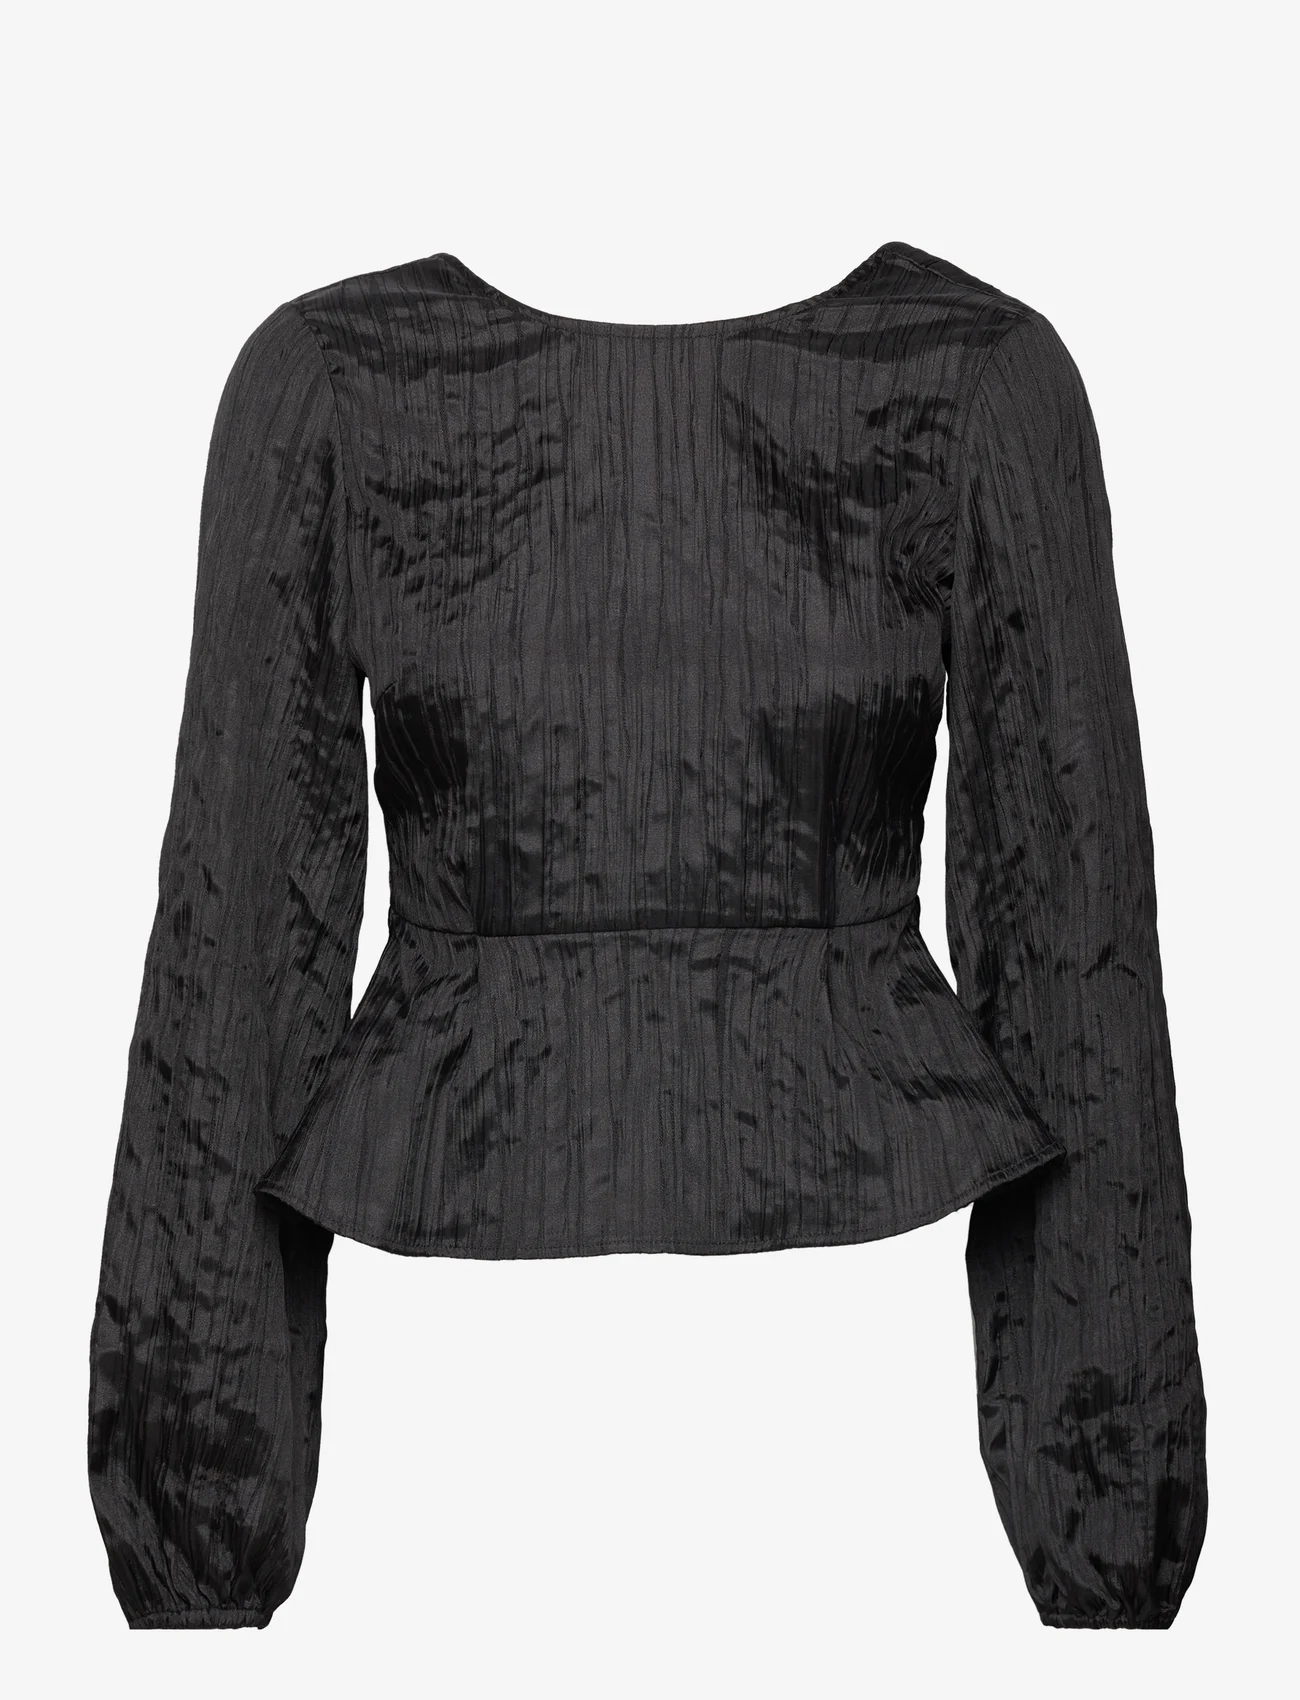 Envii - ENURANUS LS TOP 7108 - long-sleeved blouses - black - 0